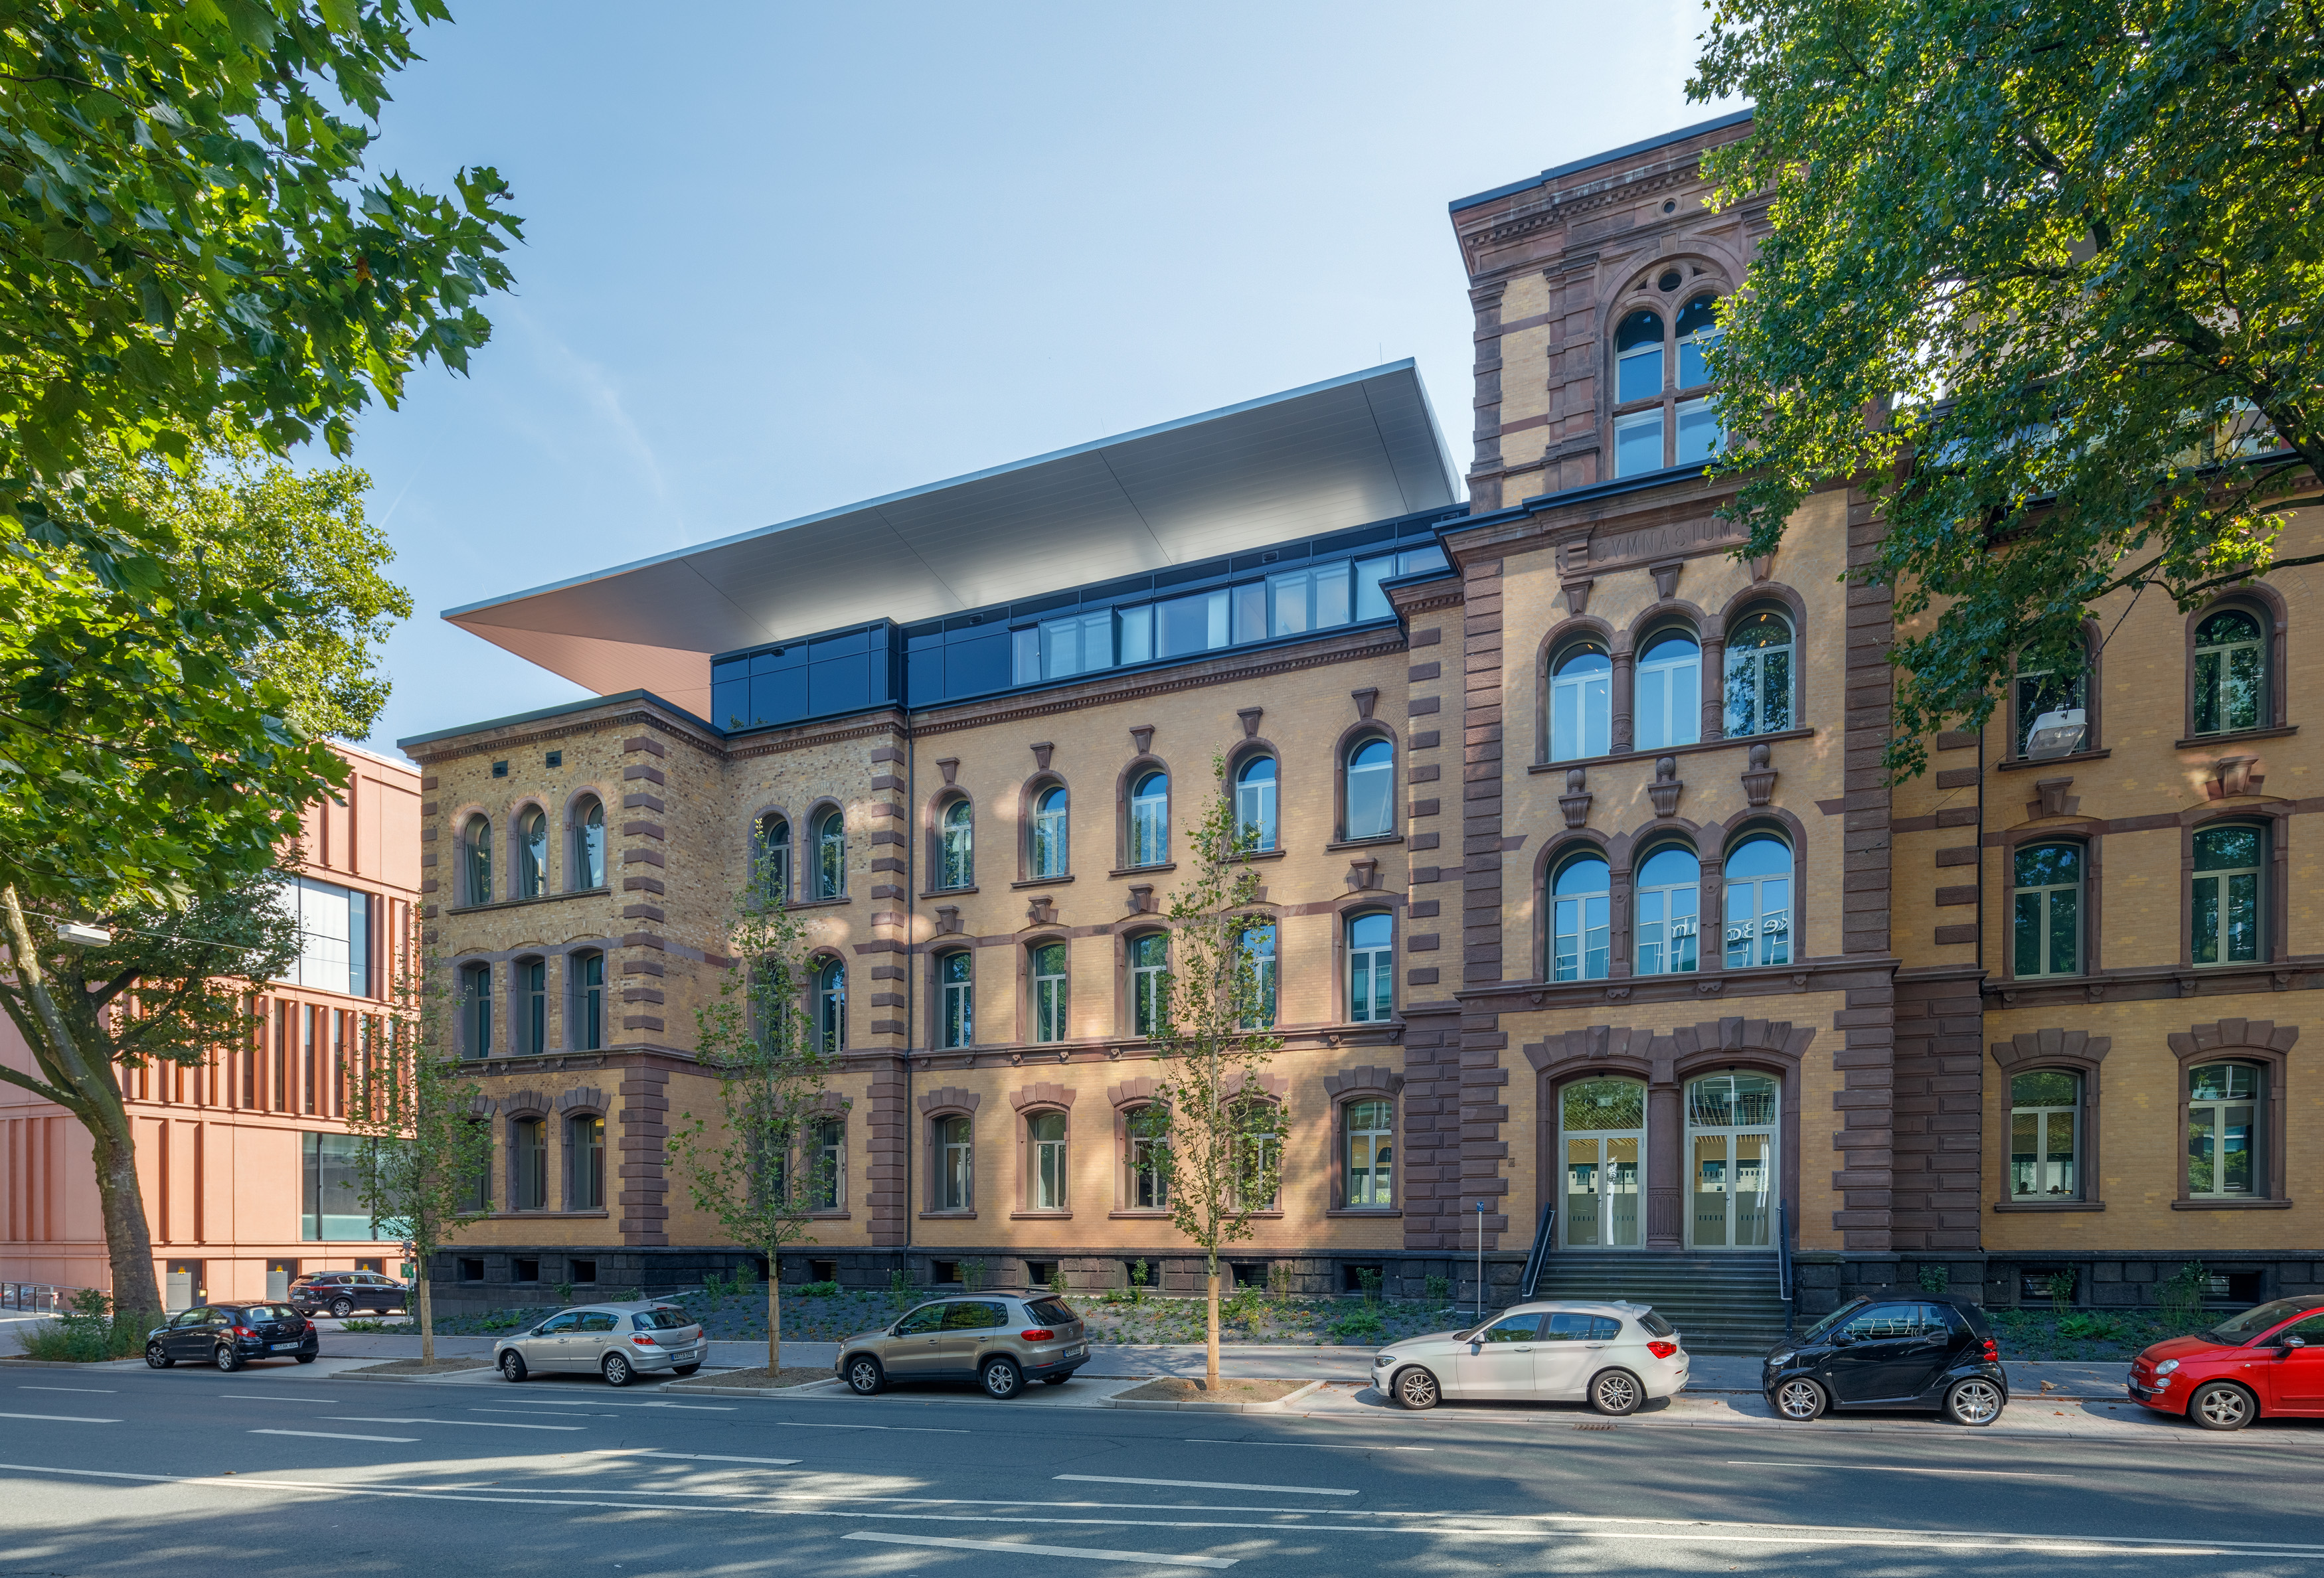 Ansicht der historische Fassade des Justizzentrums Bochum